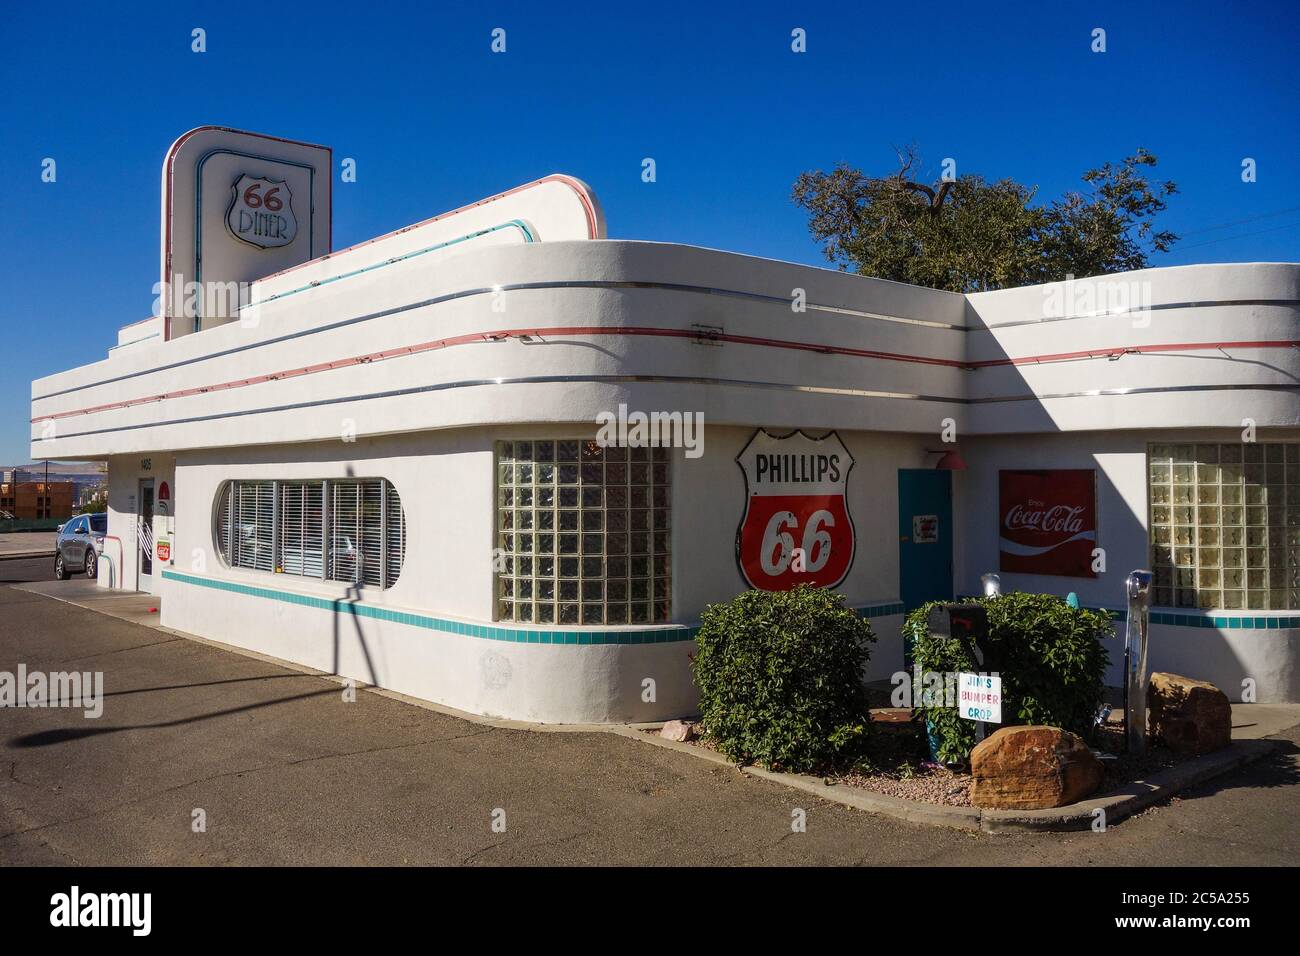 Iconic Diner 66 in Albuquerque, NM Stock Photo